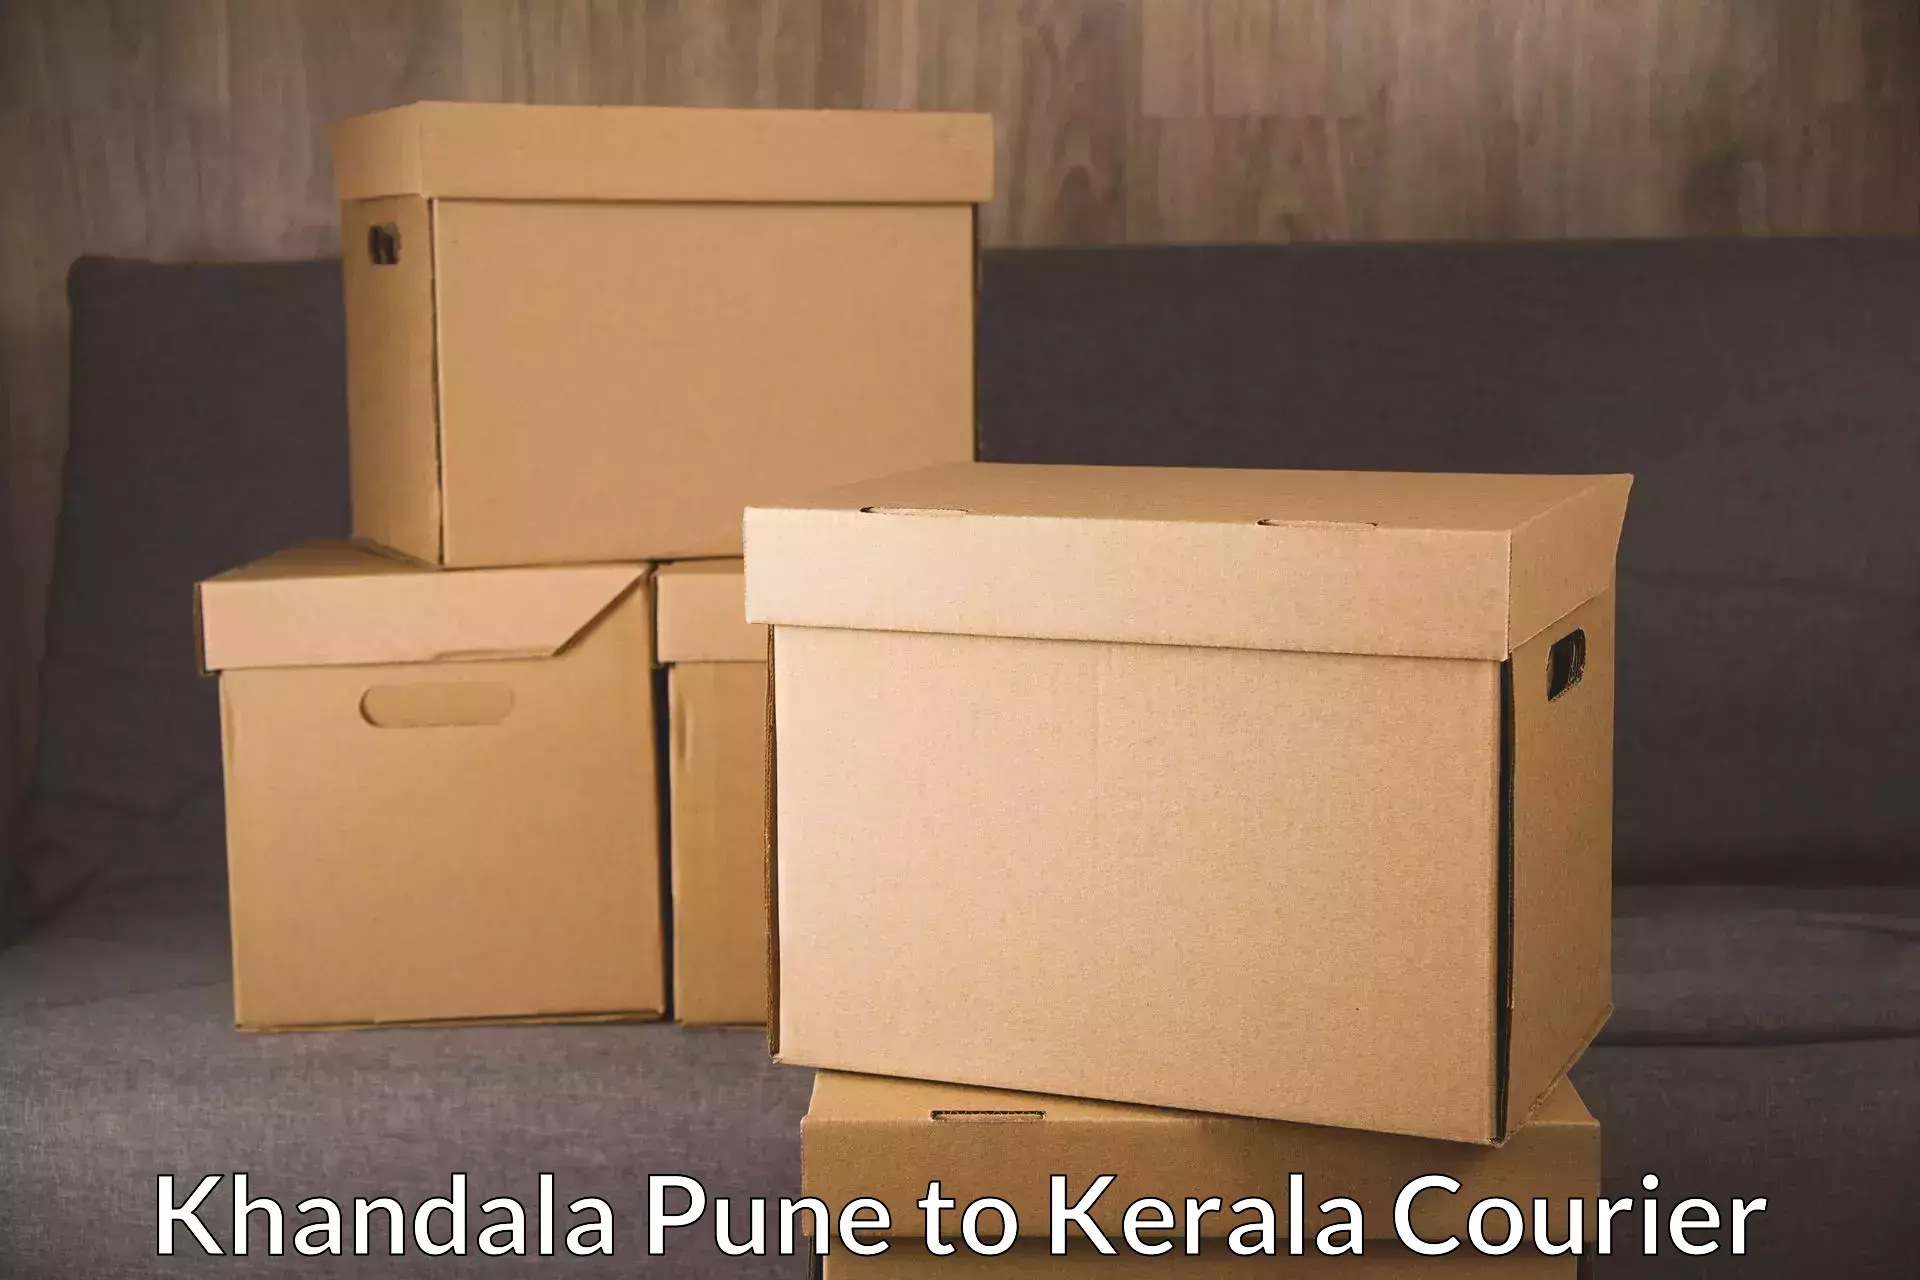 Express mail service Khandala Pune to Cochin Port Kochi